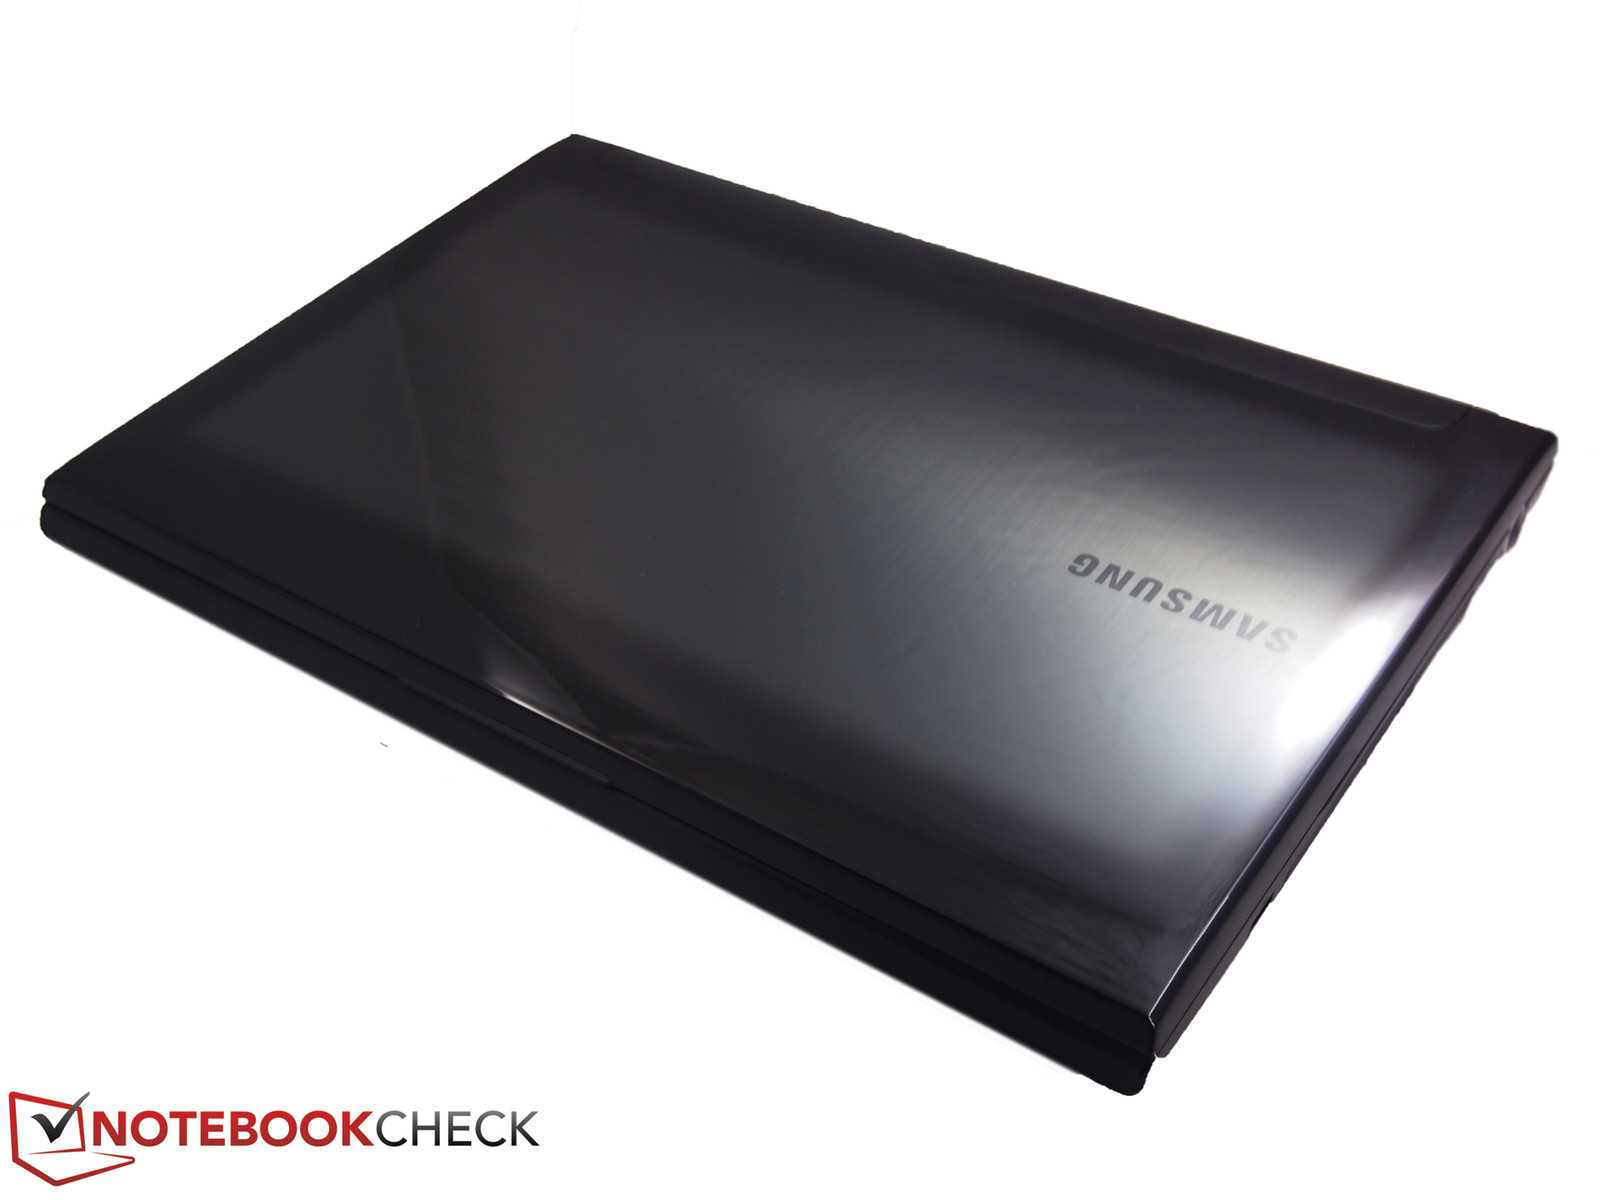 Ноутбук samsung 700g7c-t02 — купить, цена и характеристики, отзывы